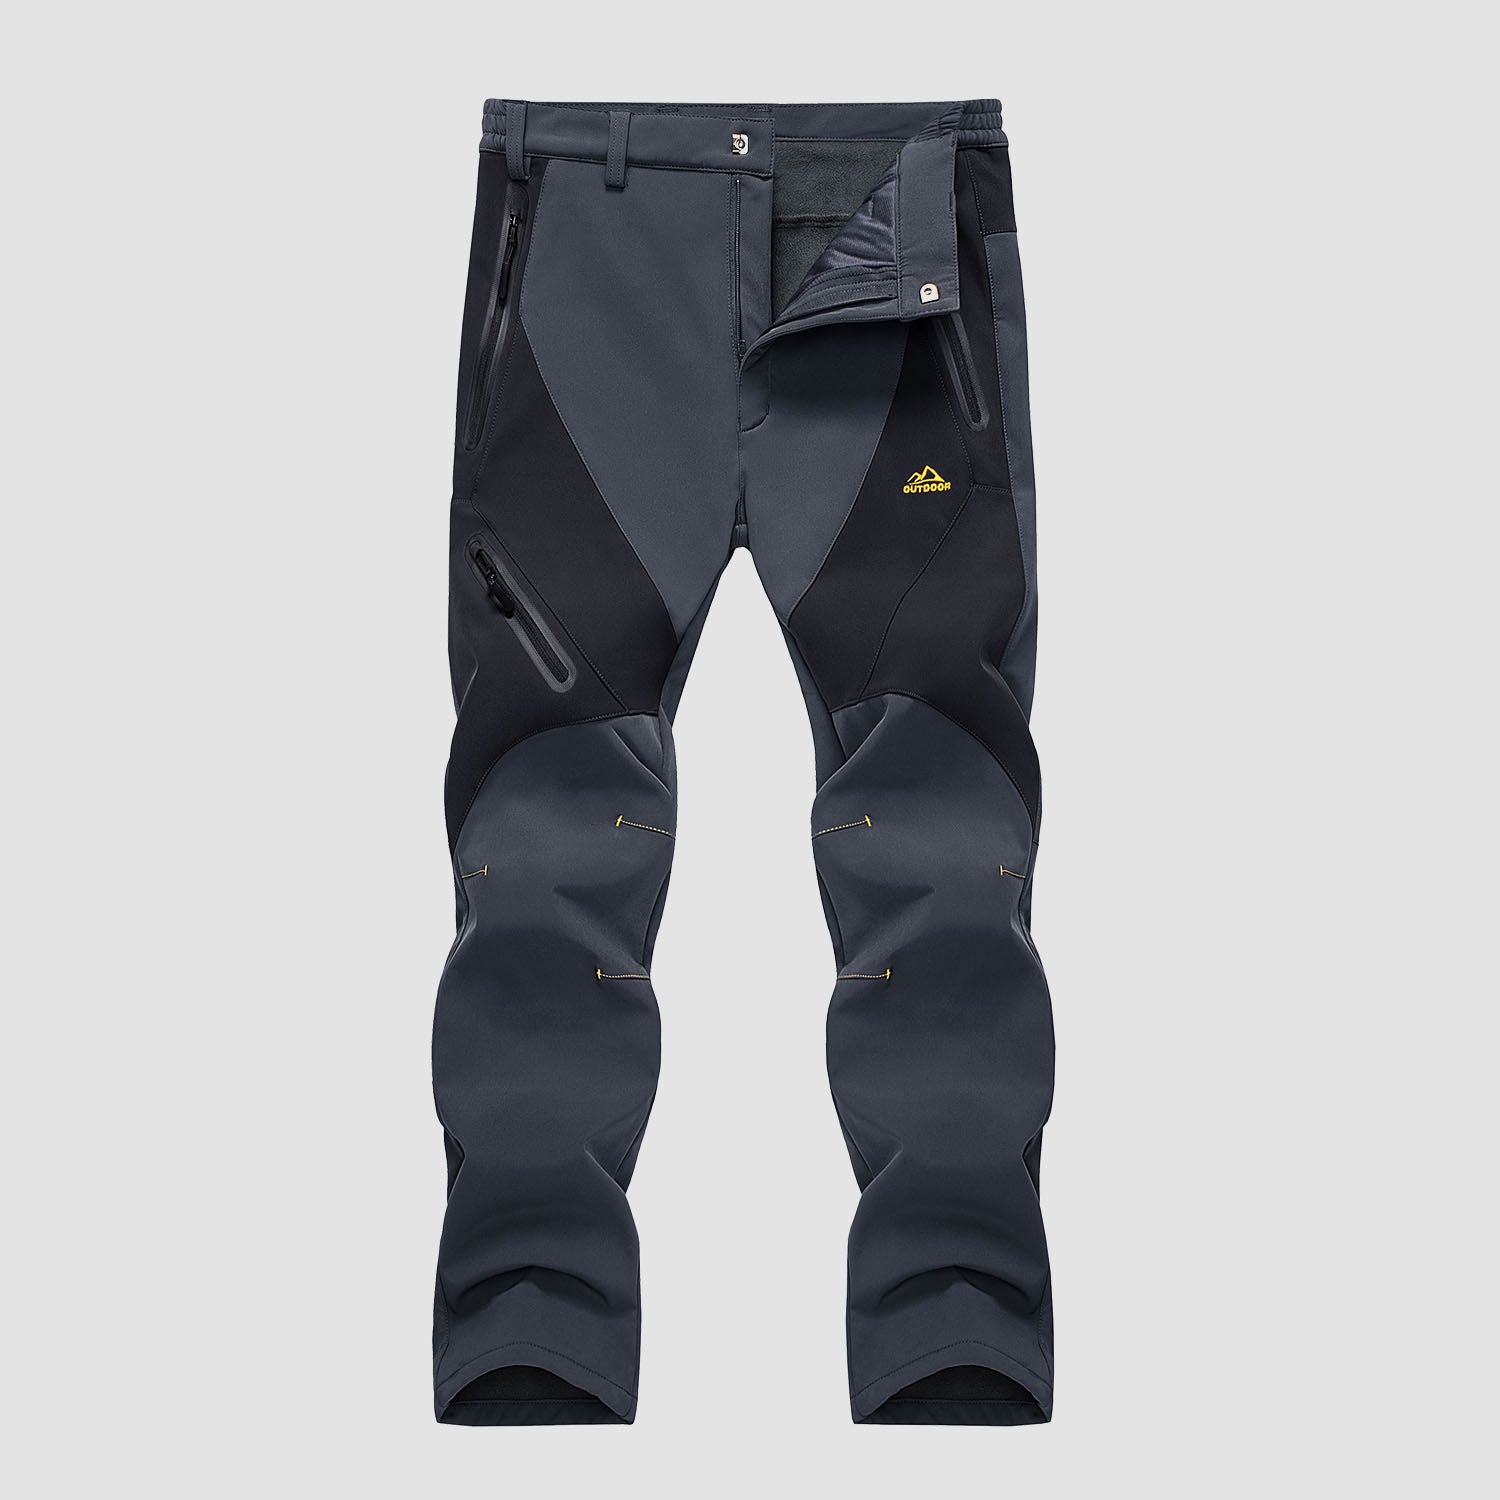 https://magcomsen.com/cdn/shop/products/Men_s-Winter-Pants-Snow-Pants-Fleece-Lined-Water-Resistant-with-4-Zip-Pockets-Skiing-Pants_5.jpg?v=1667459456&width=1500